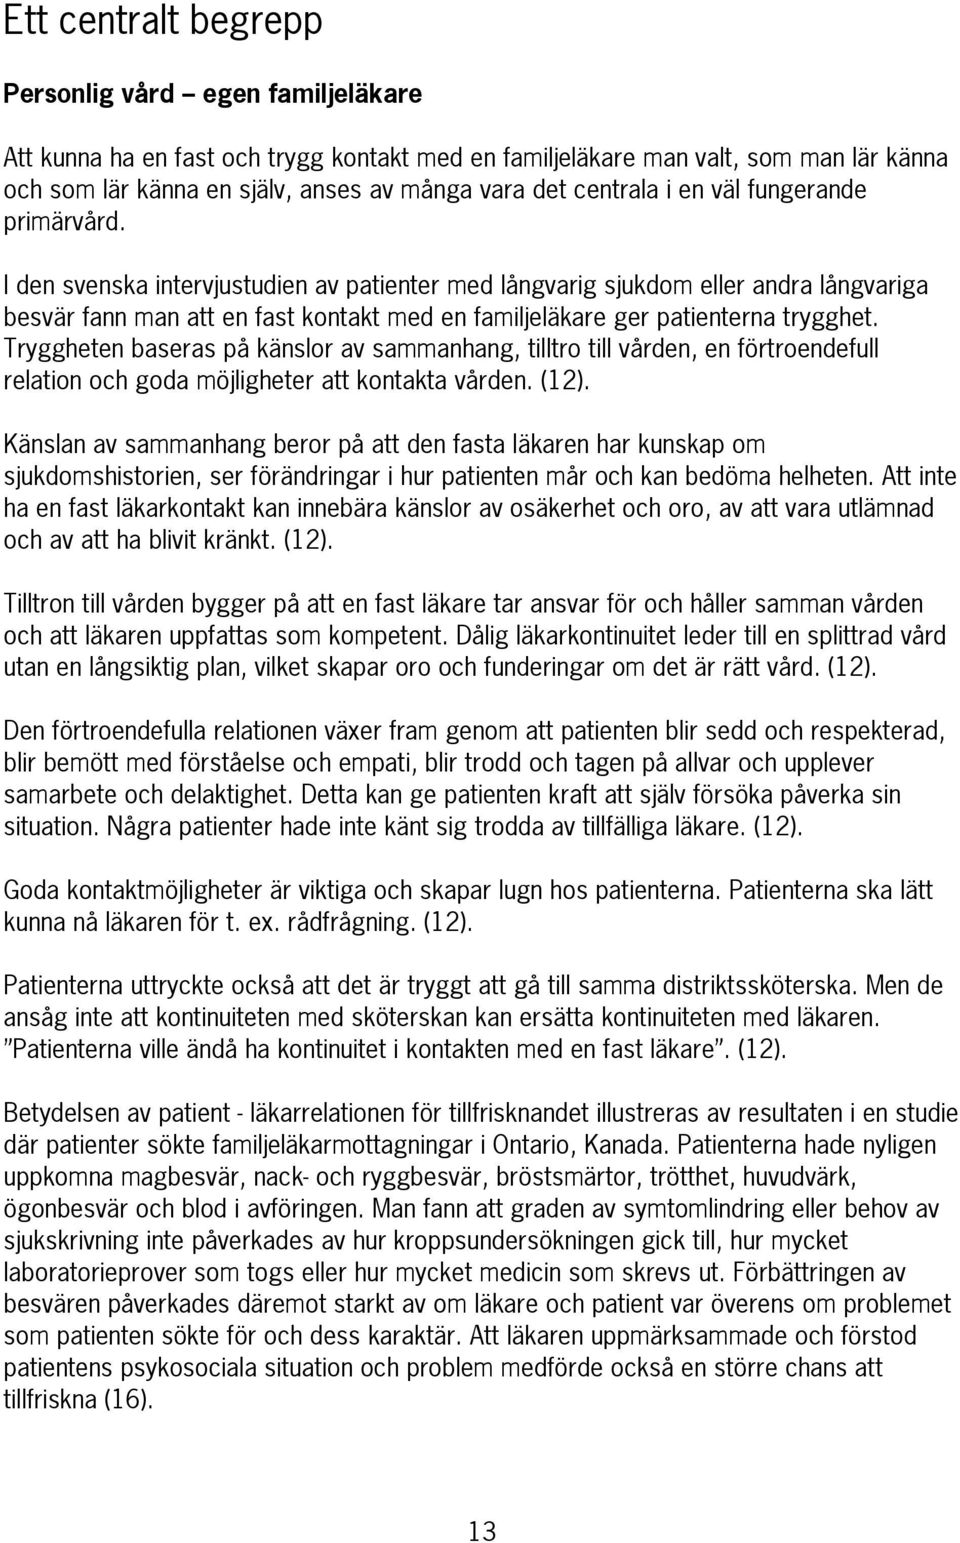 I den svenska intervjustudien av patienter med långvarig sjukdom eller andra långvariga besvär fann man att en fast kontakt med en familjeläkare ger patienterna trygghet.